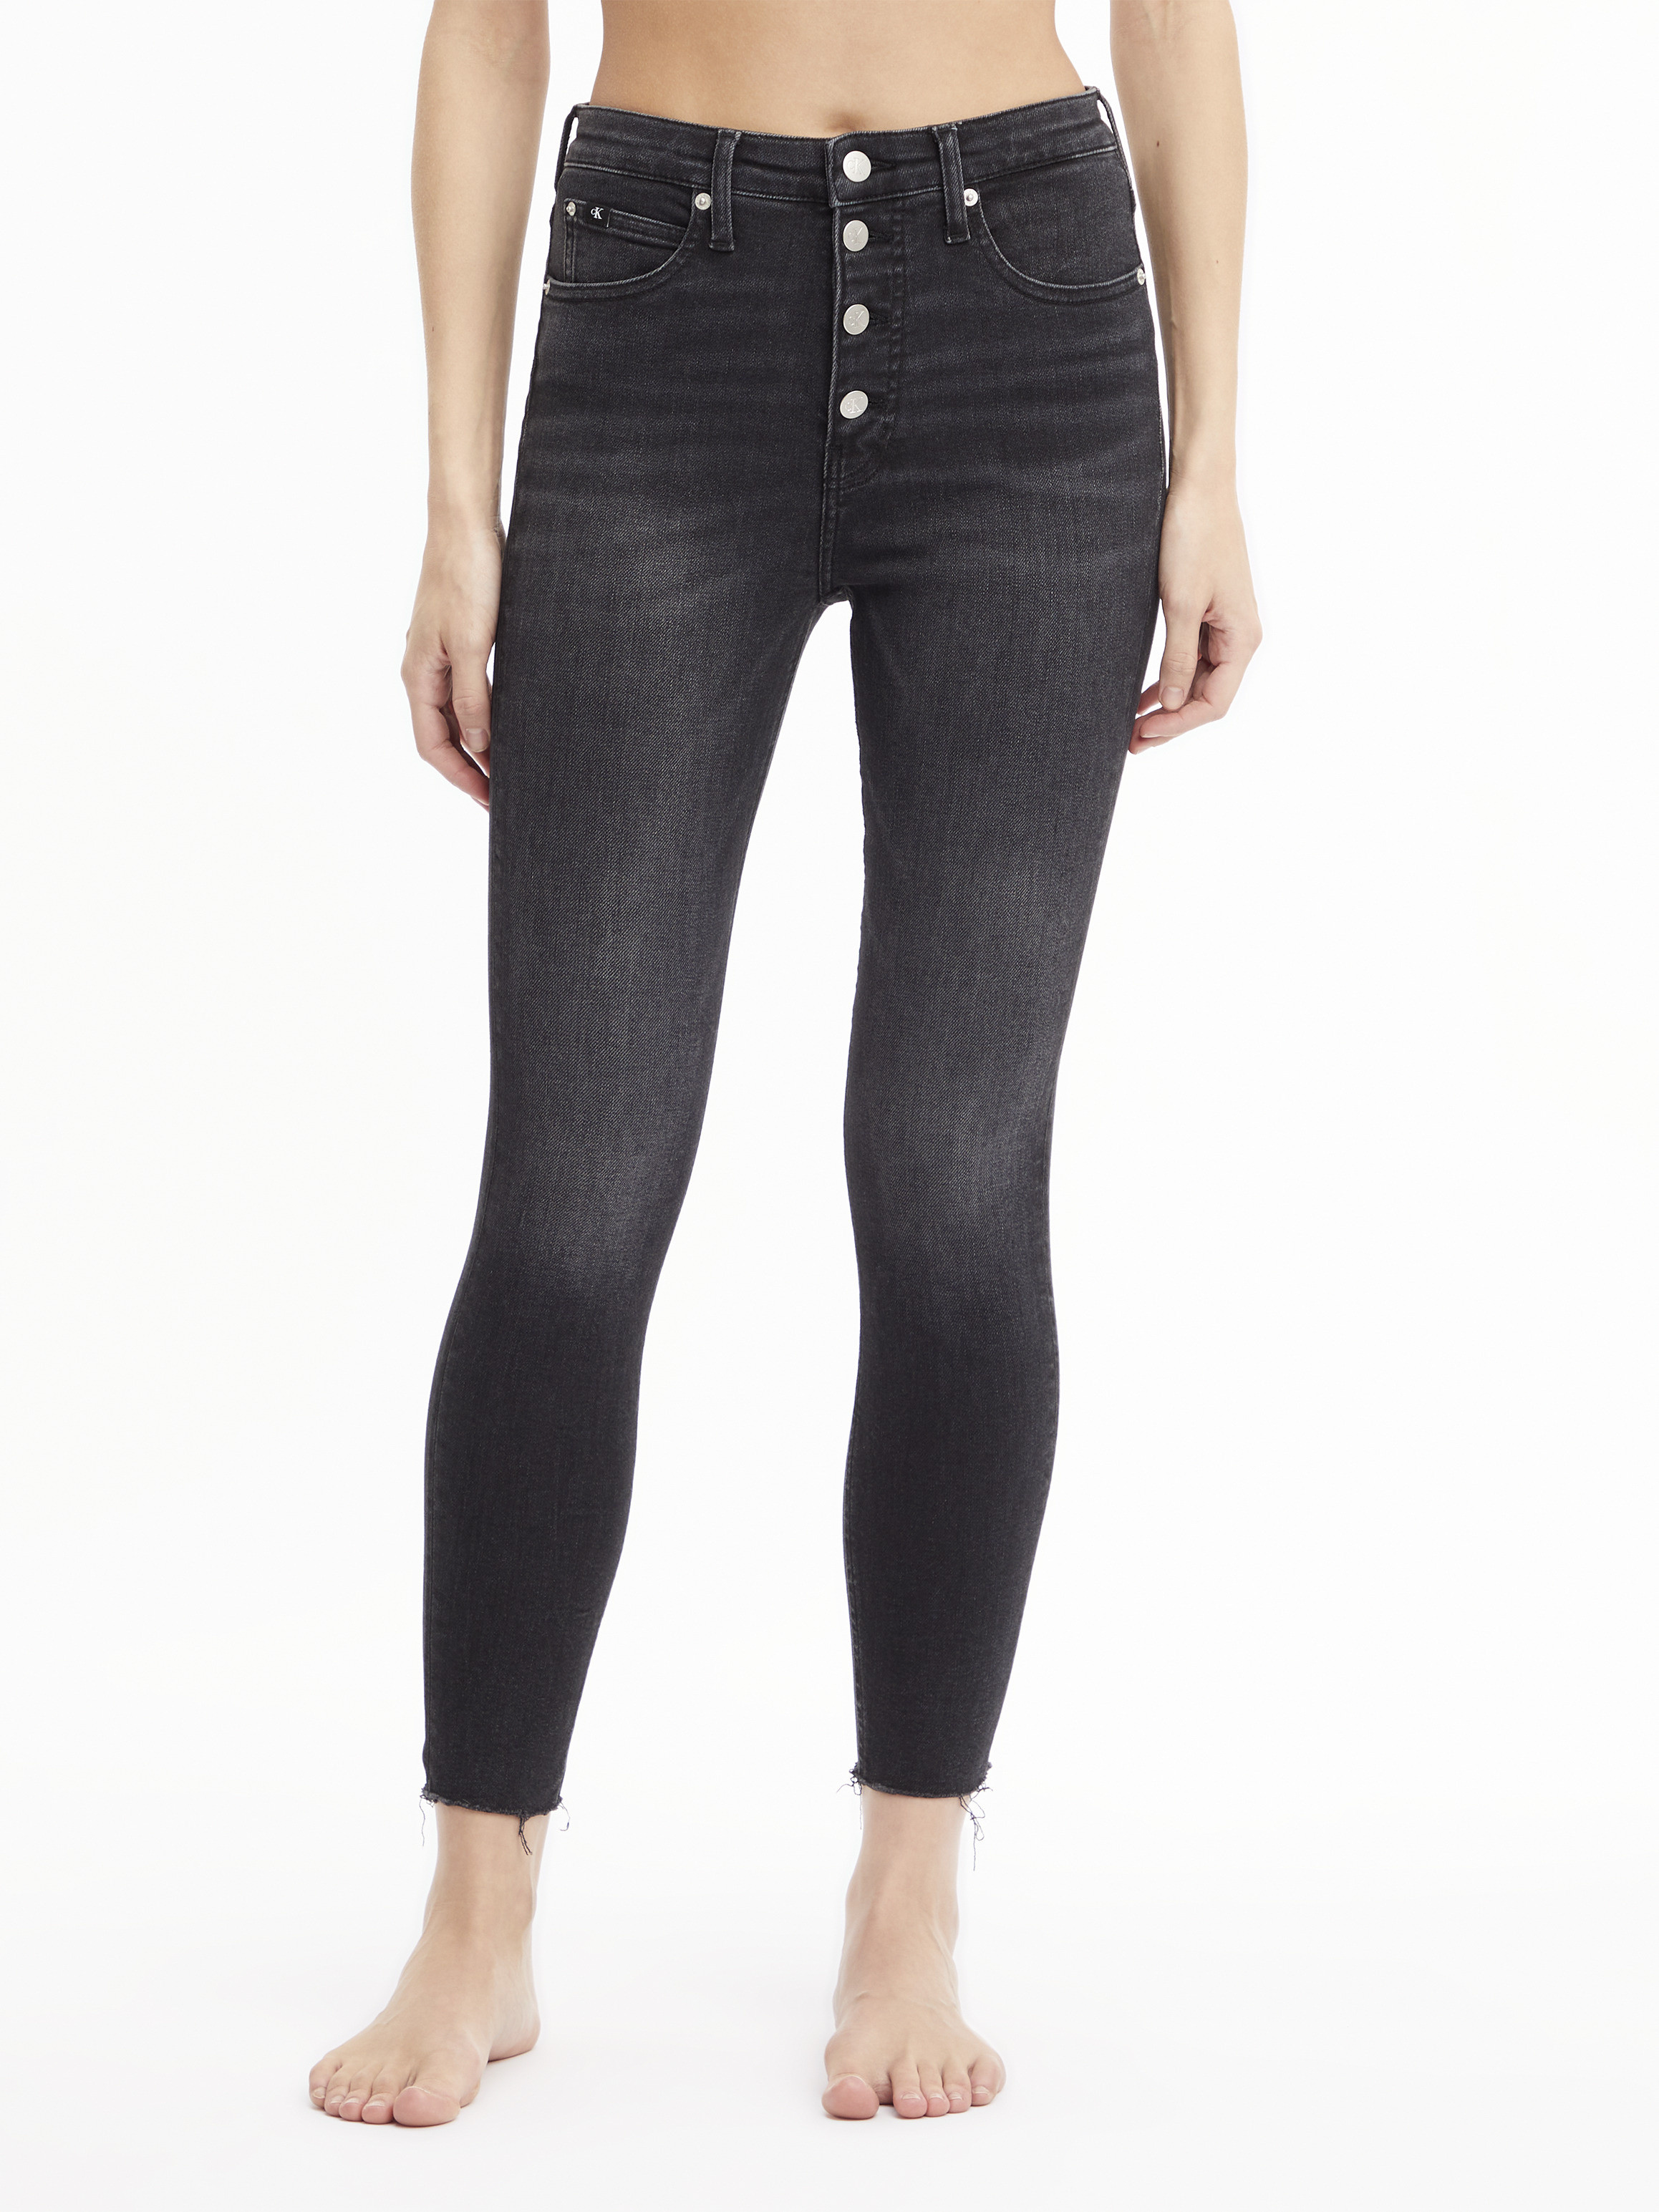 Calvin Klein Jeans - Super skinny five pocket jeans, Black, large image number 4